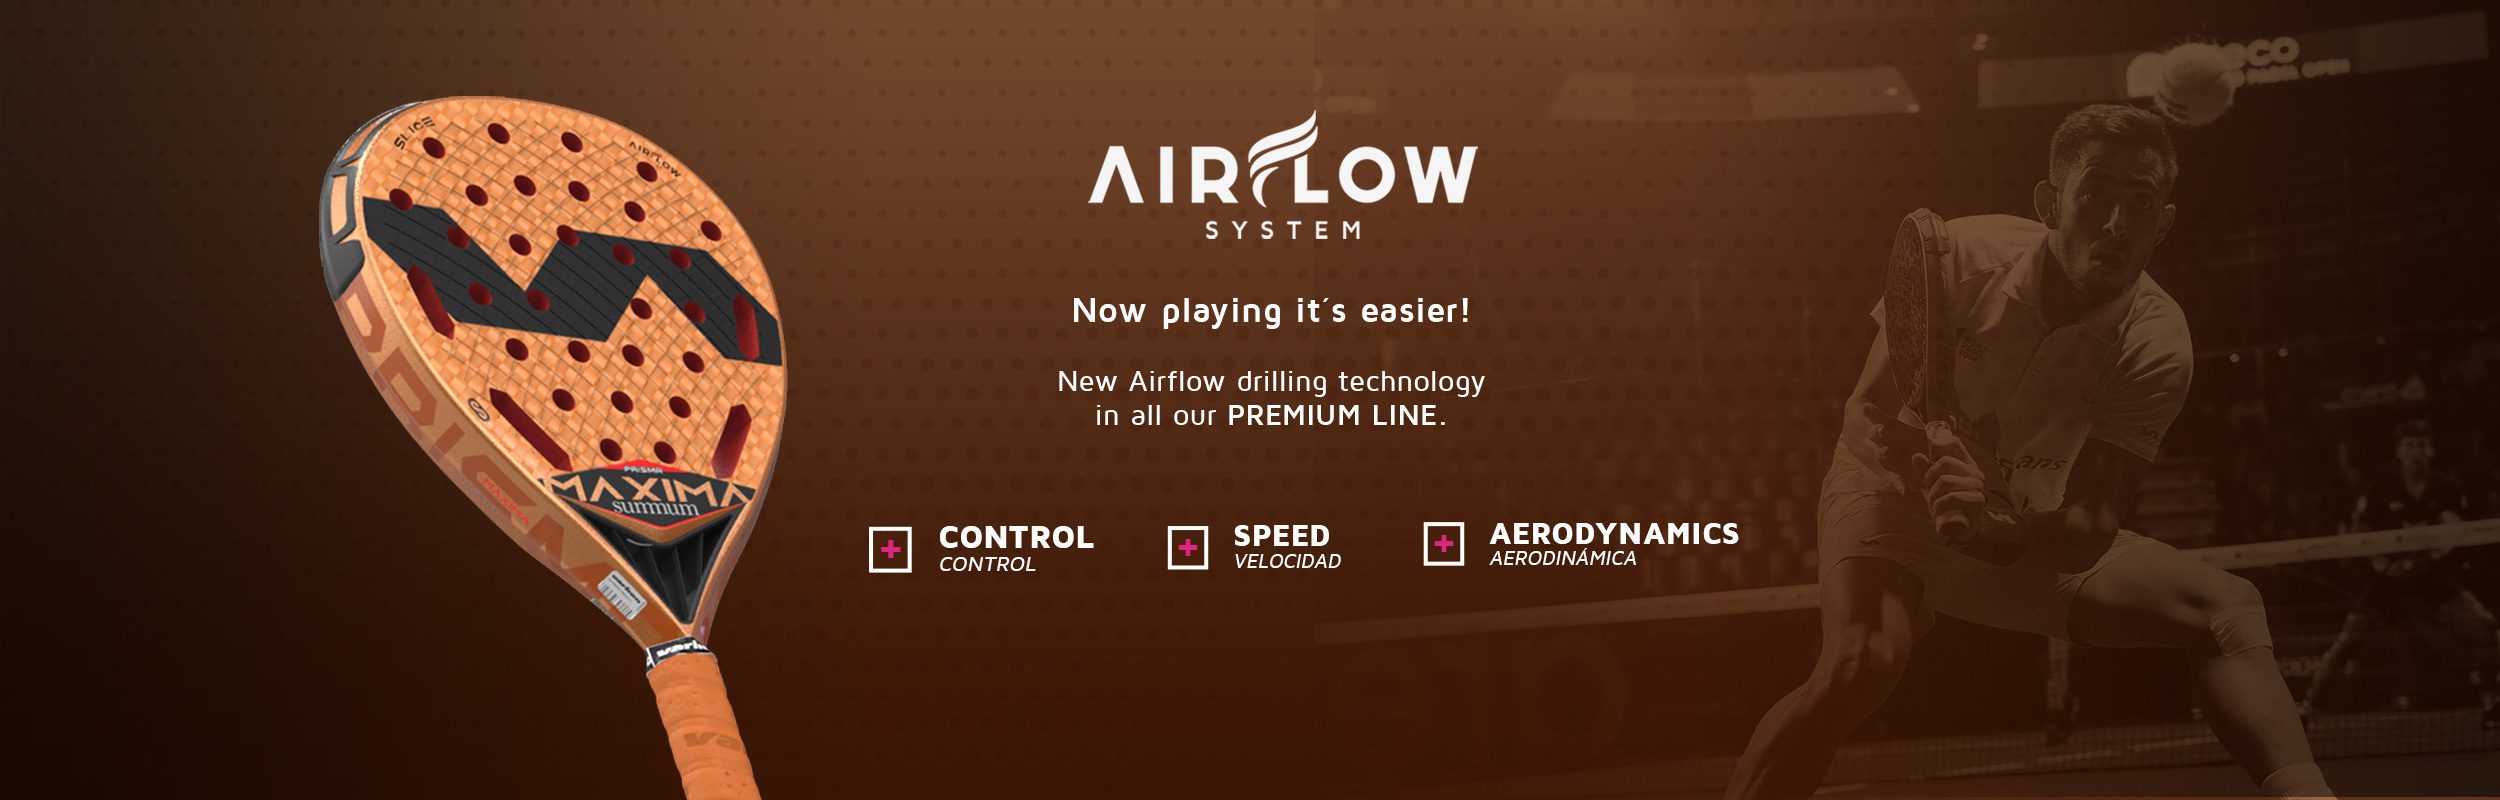 eng-Airflow-tech-web-slide